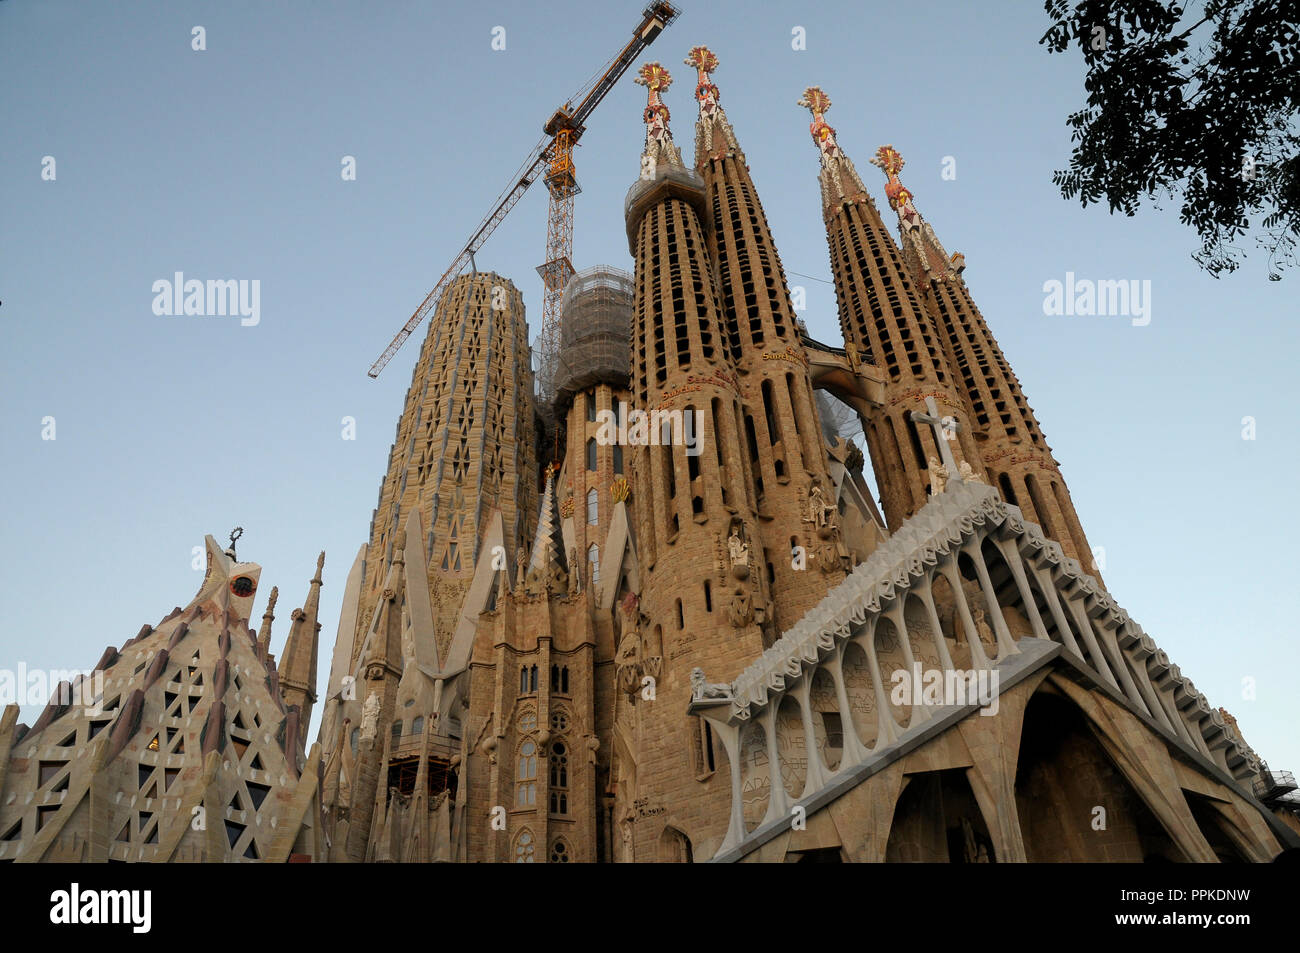 Sagrada Familia entworfen von dem Architekten Antoni Gaudi Gebäude moderne façane auf Bau, Barcelona, Spanien Stockfoto